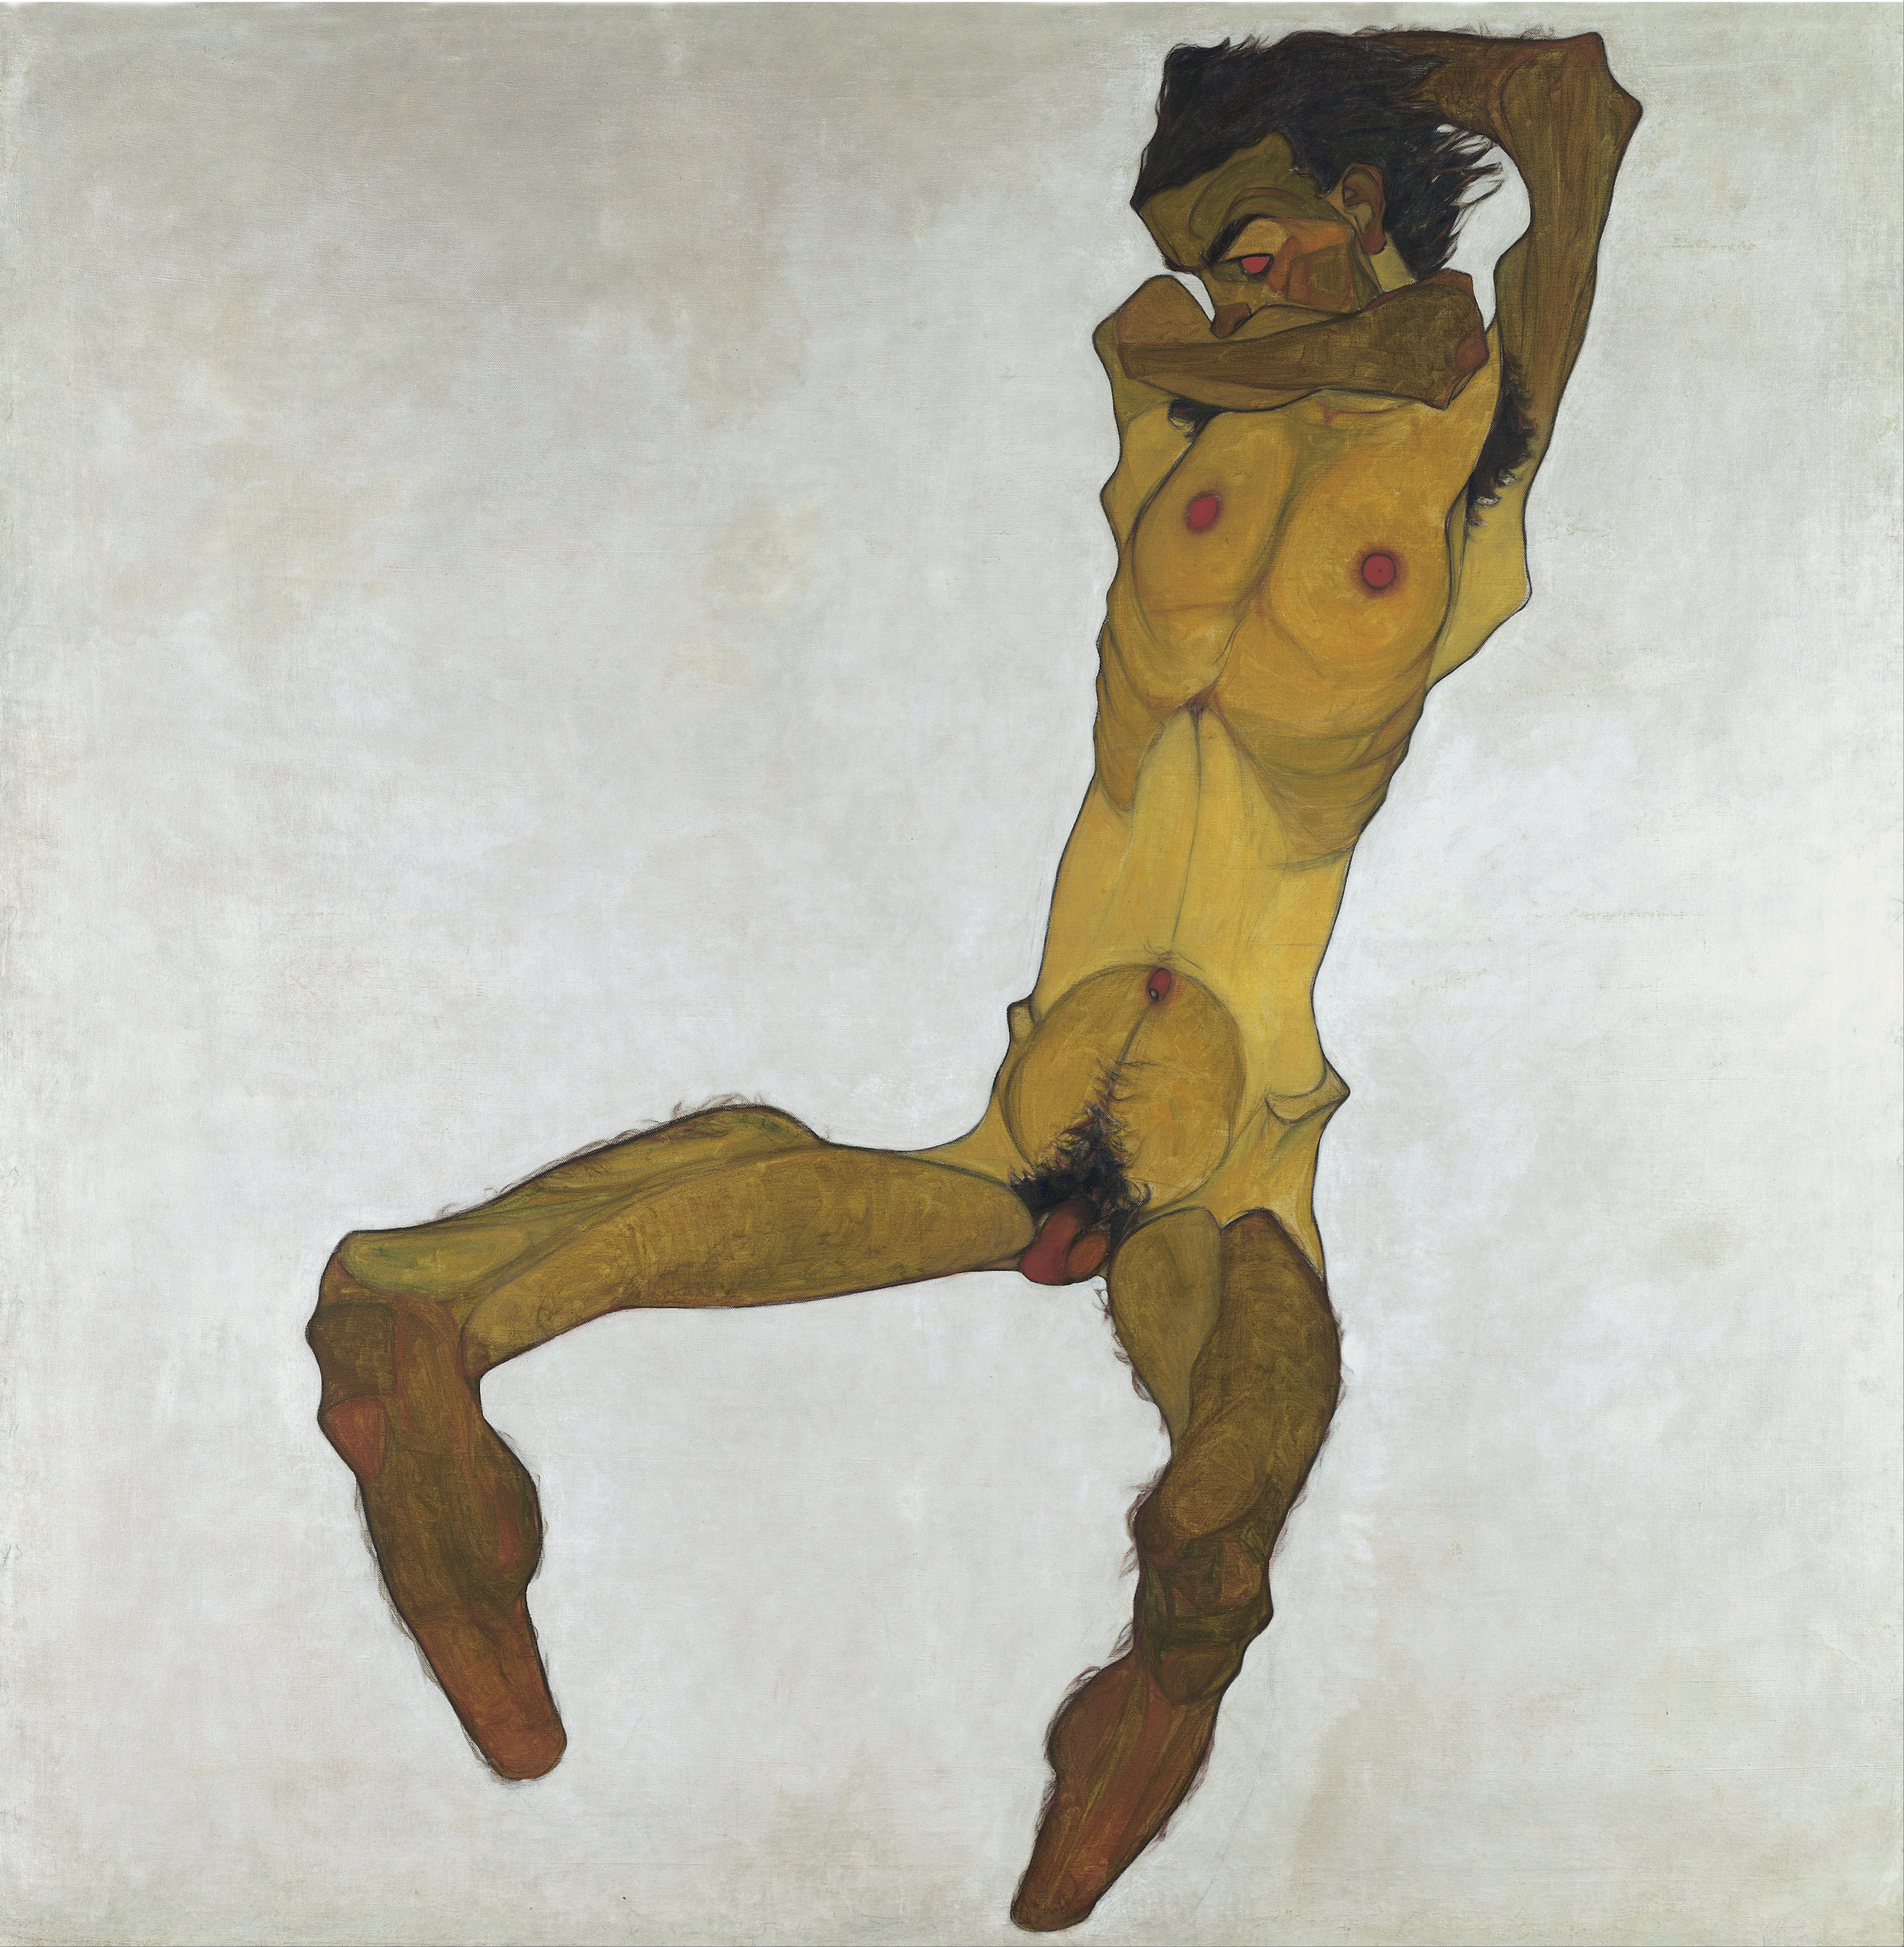 앉아 있는 남성 누드 (자화상) by Egon Schiele - 1910 - 150 x 152.5 cm 